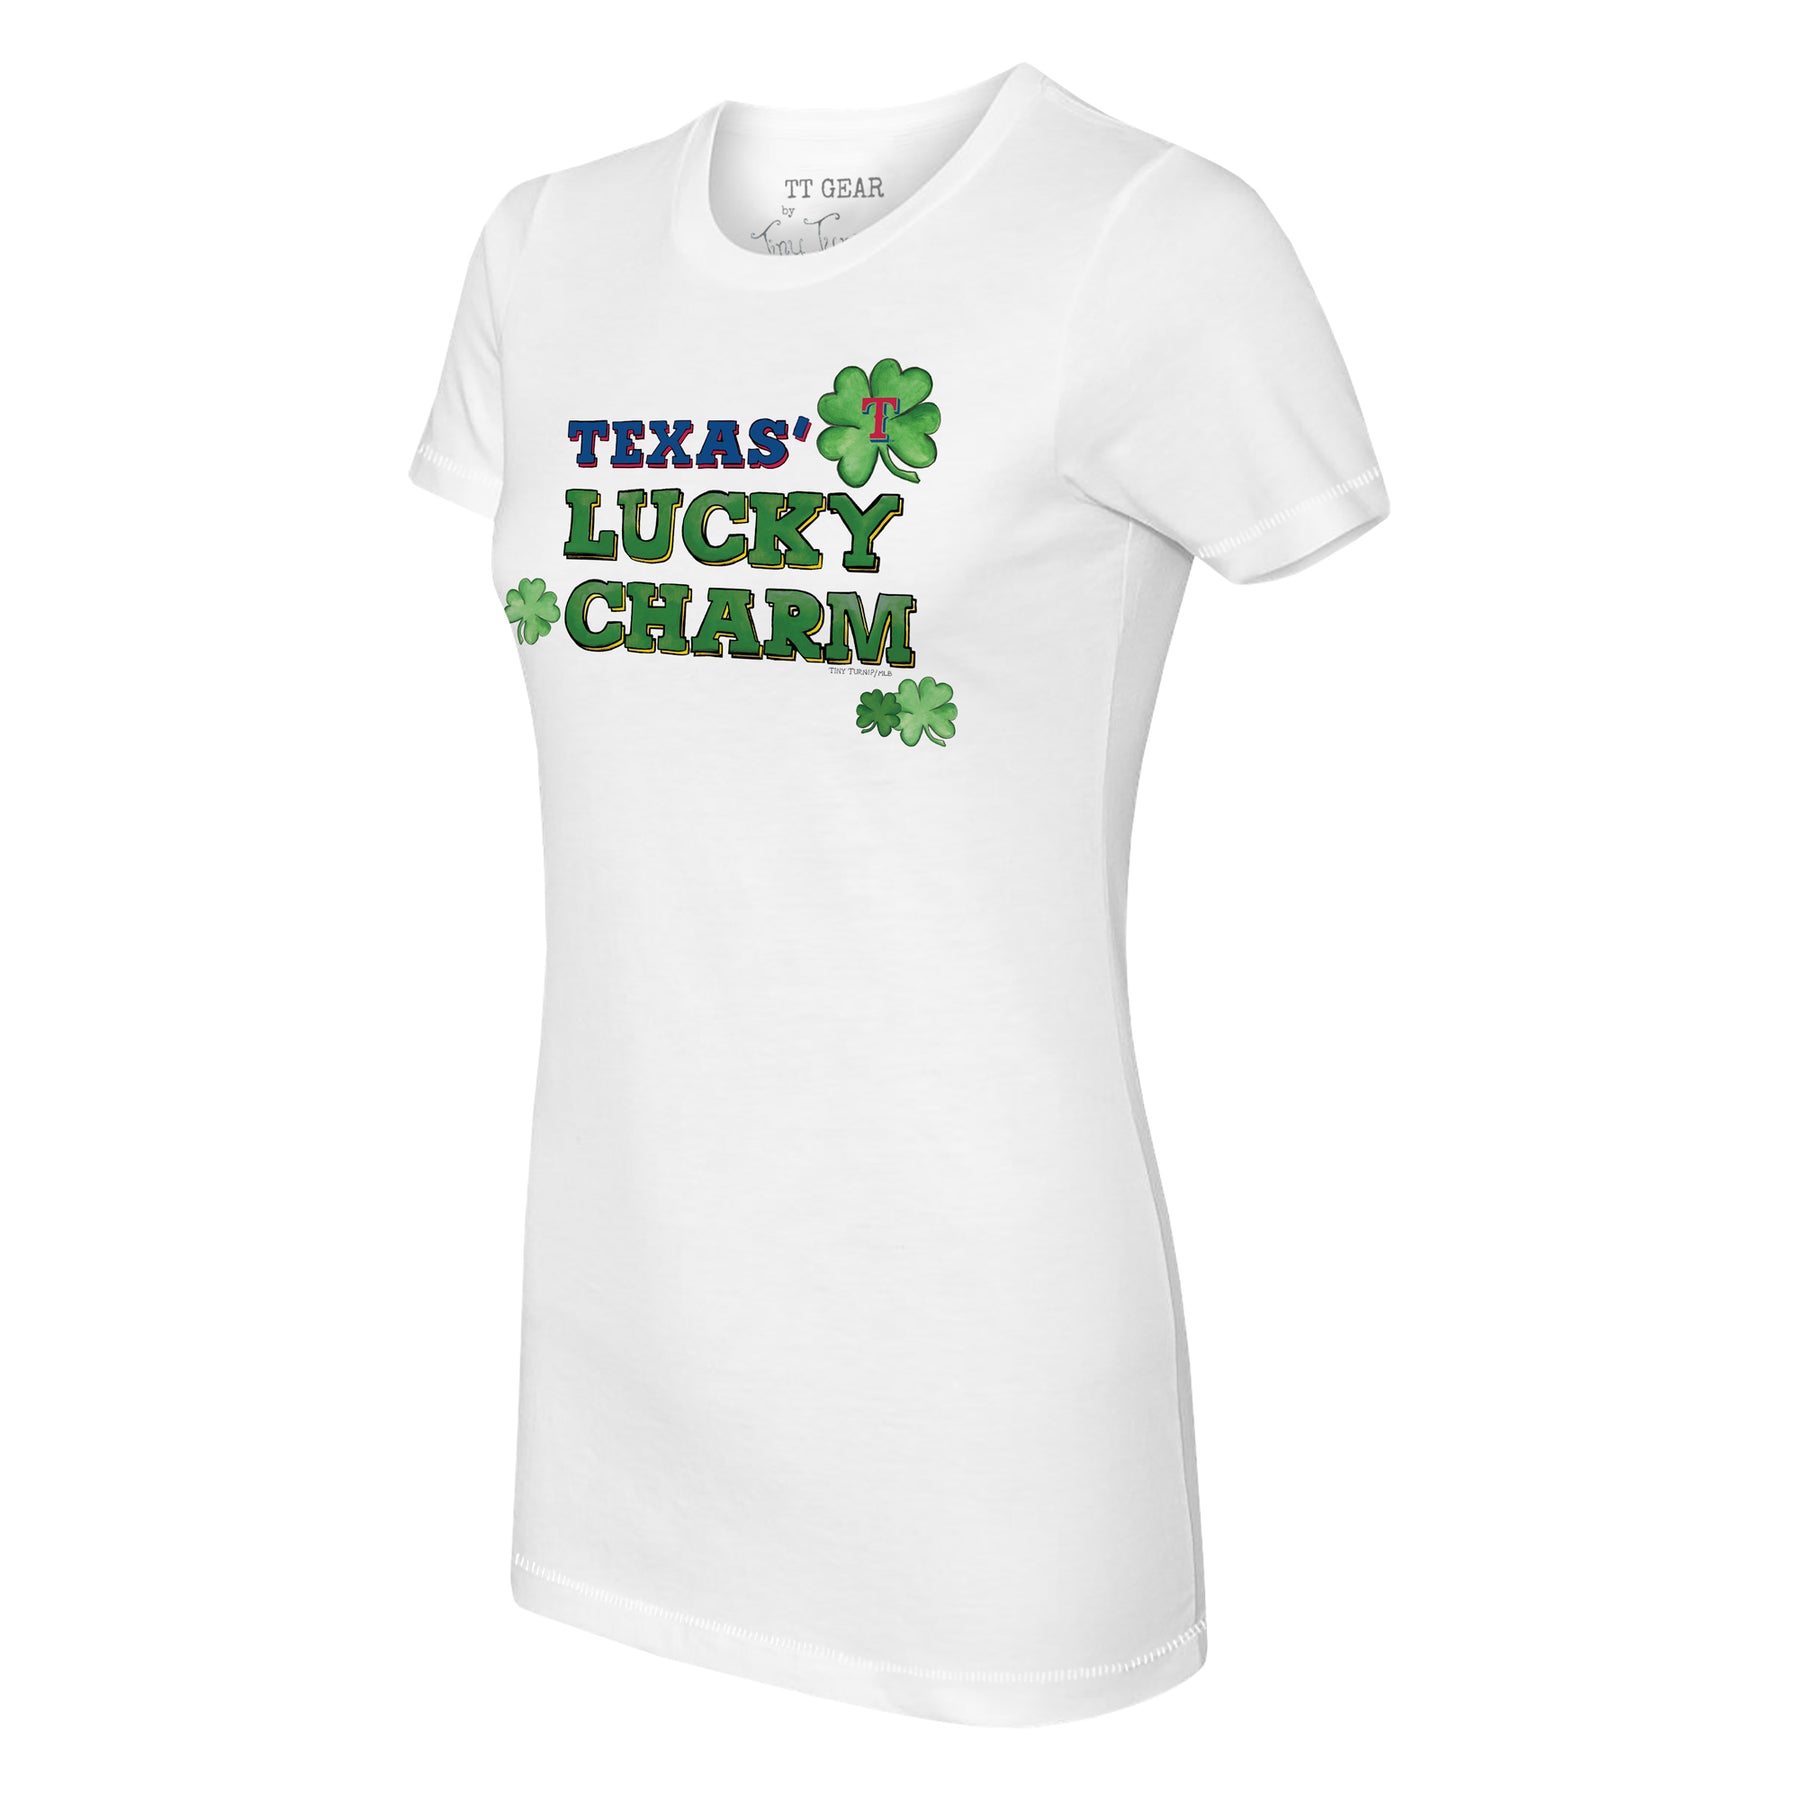 Texas Rangers Lucky Charm Tee Shirt